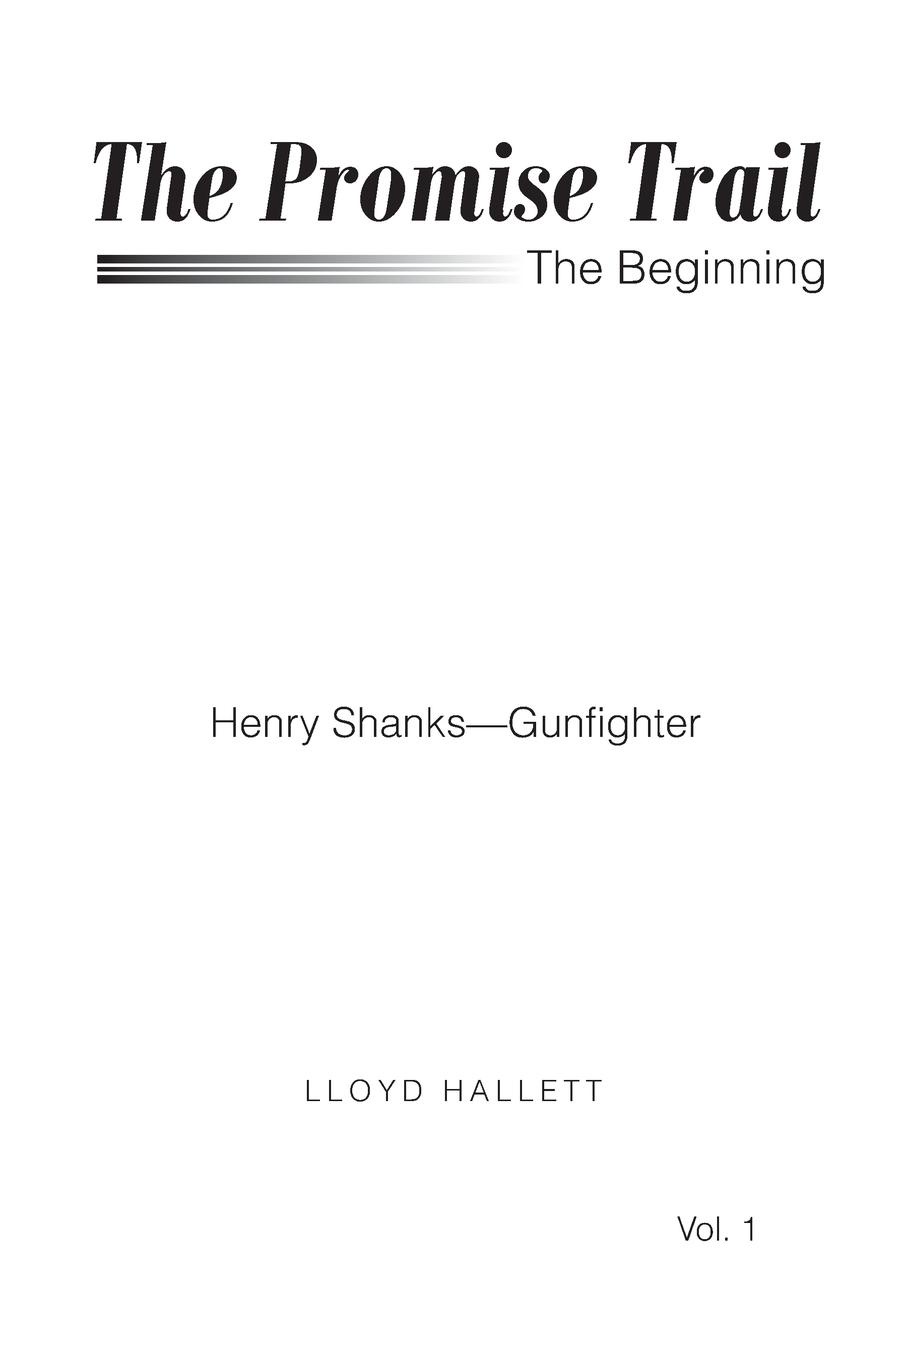 The Promise Trail The Beginning. Henry Shanks - Gunfighter Vol. 1